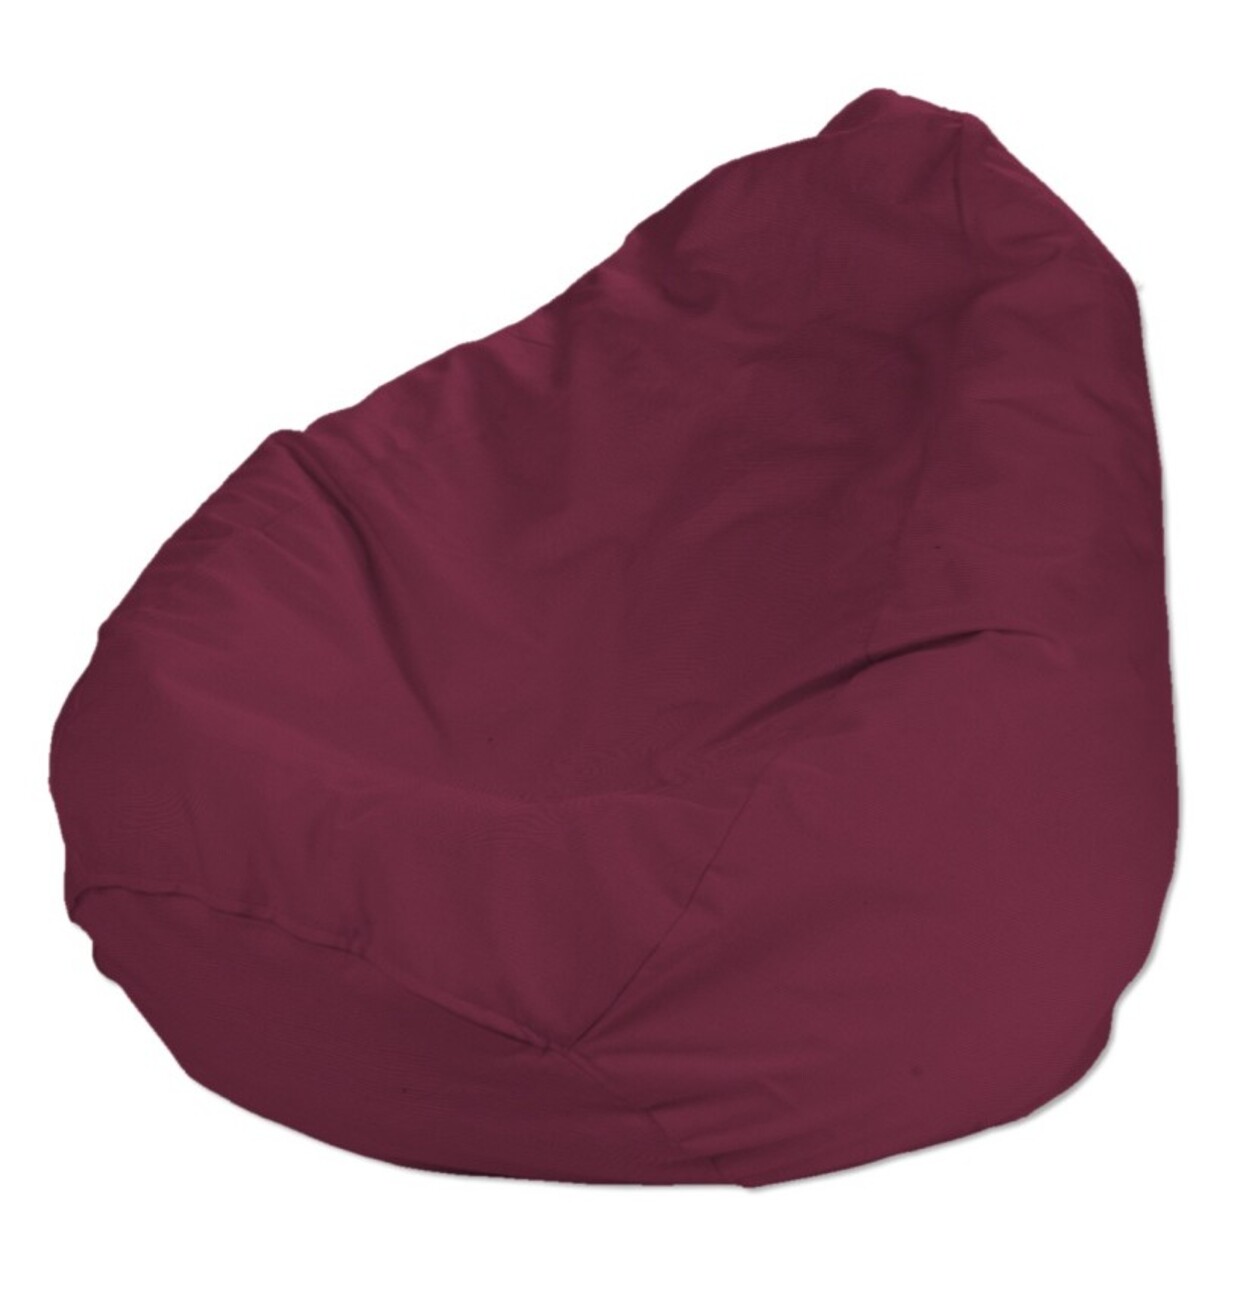 Bezug für Sitzsack, pflaume , Bezug für Sitzsack Ø50 x 85 cm, Cotton Panama günstig online kaufen